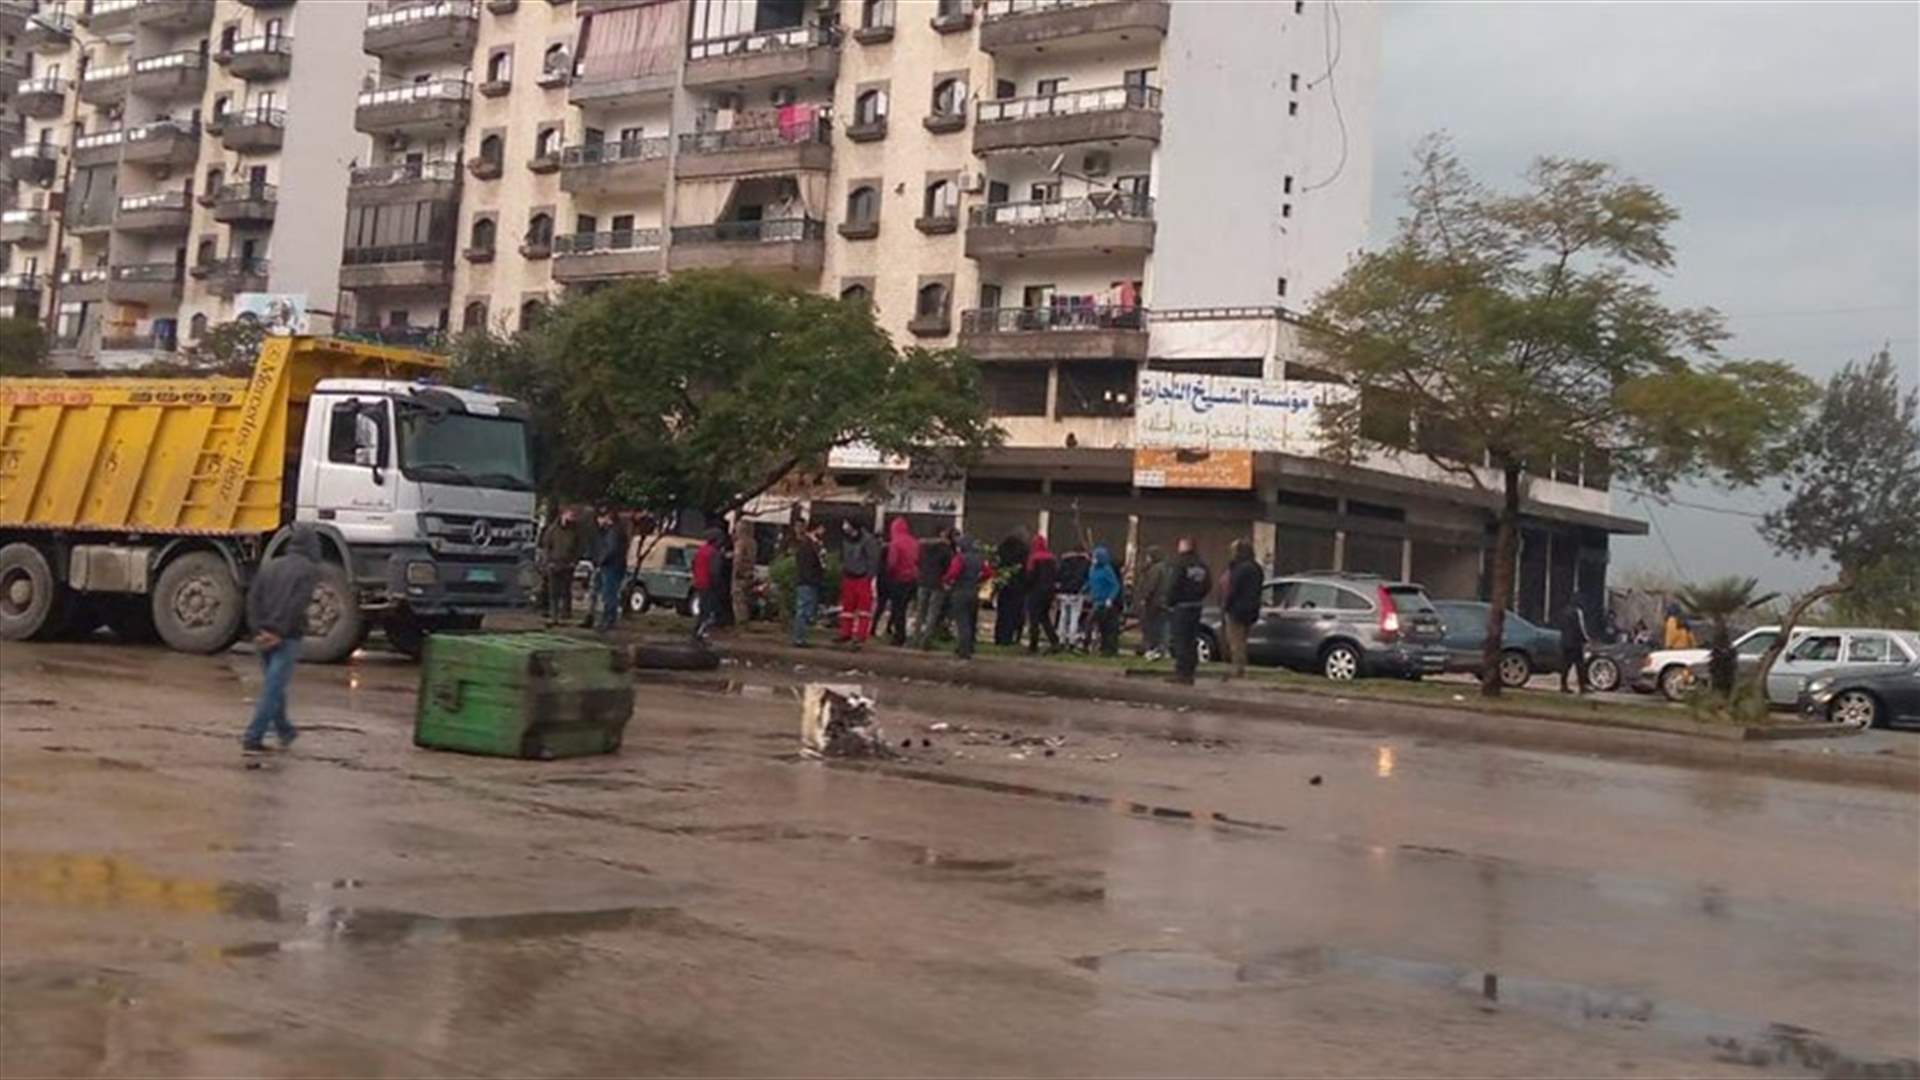 قطع عدد من الشبان اوتوستراد التبانة احتجاجا على انقطاع التيار الكهربائي والمياه في المنطقة